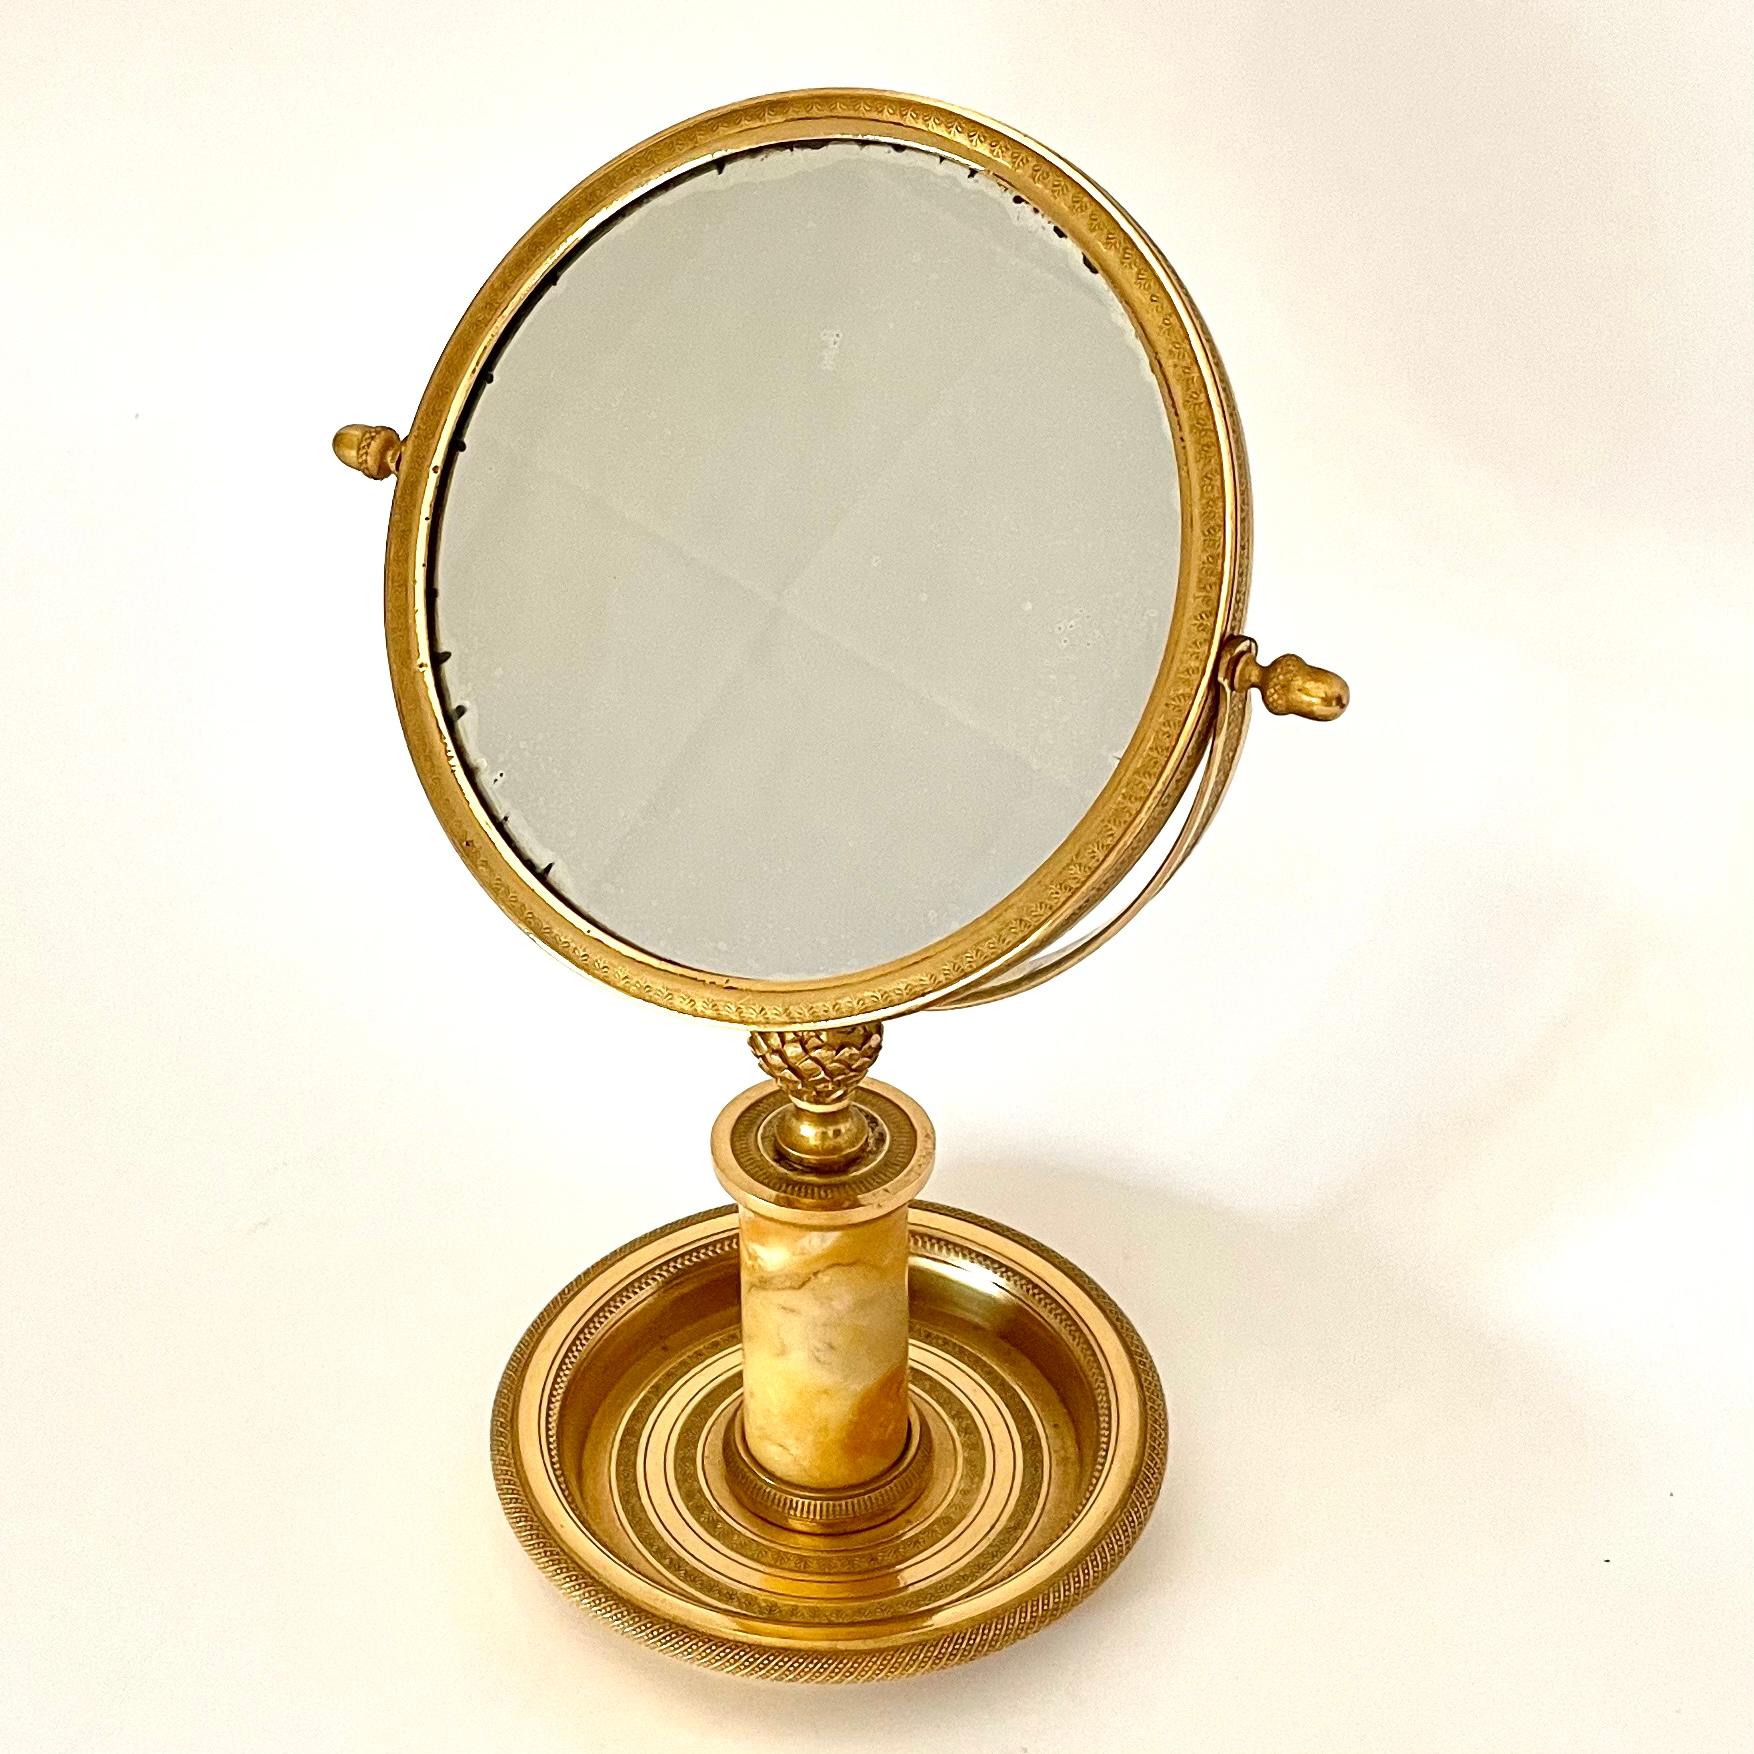 Elegant miroir de table en bronze doré avec un centre en marbre. Très belle dorure d'origine avec de beaux détails. Empire français à partir des années 1820. Bonne taille pour la coiffeuse ou comme beau miroir dans le hall d'entrée.

Usure conforme